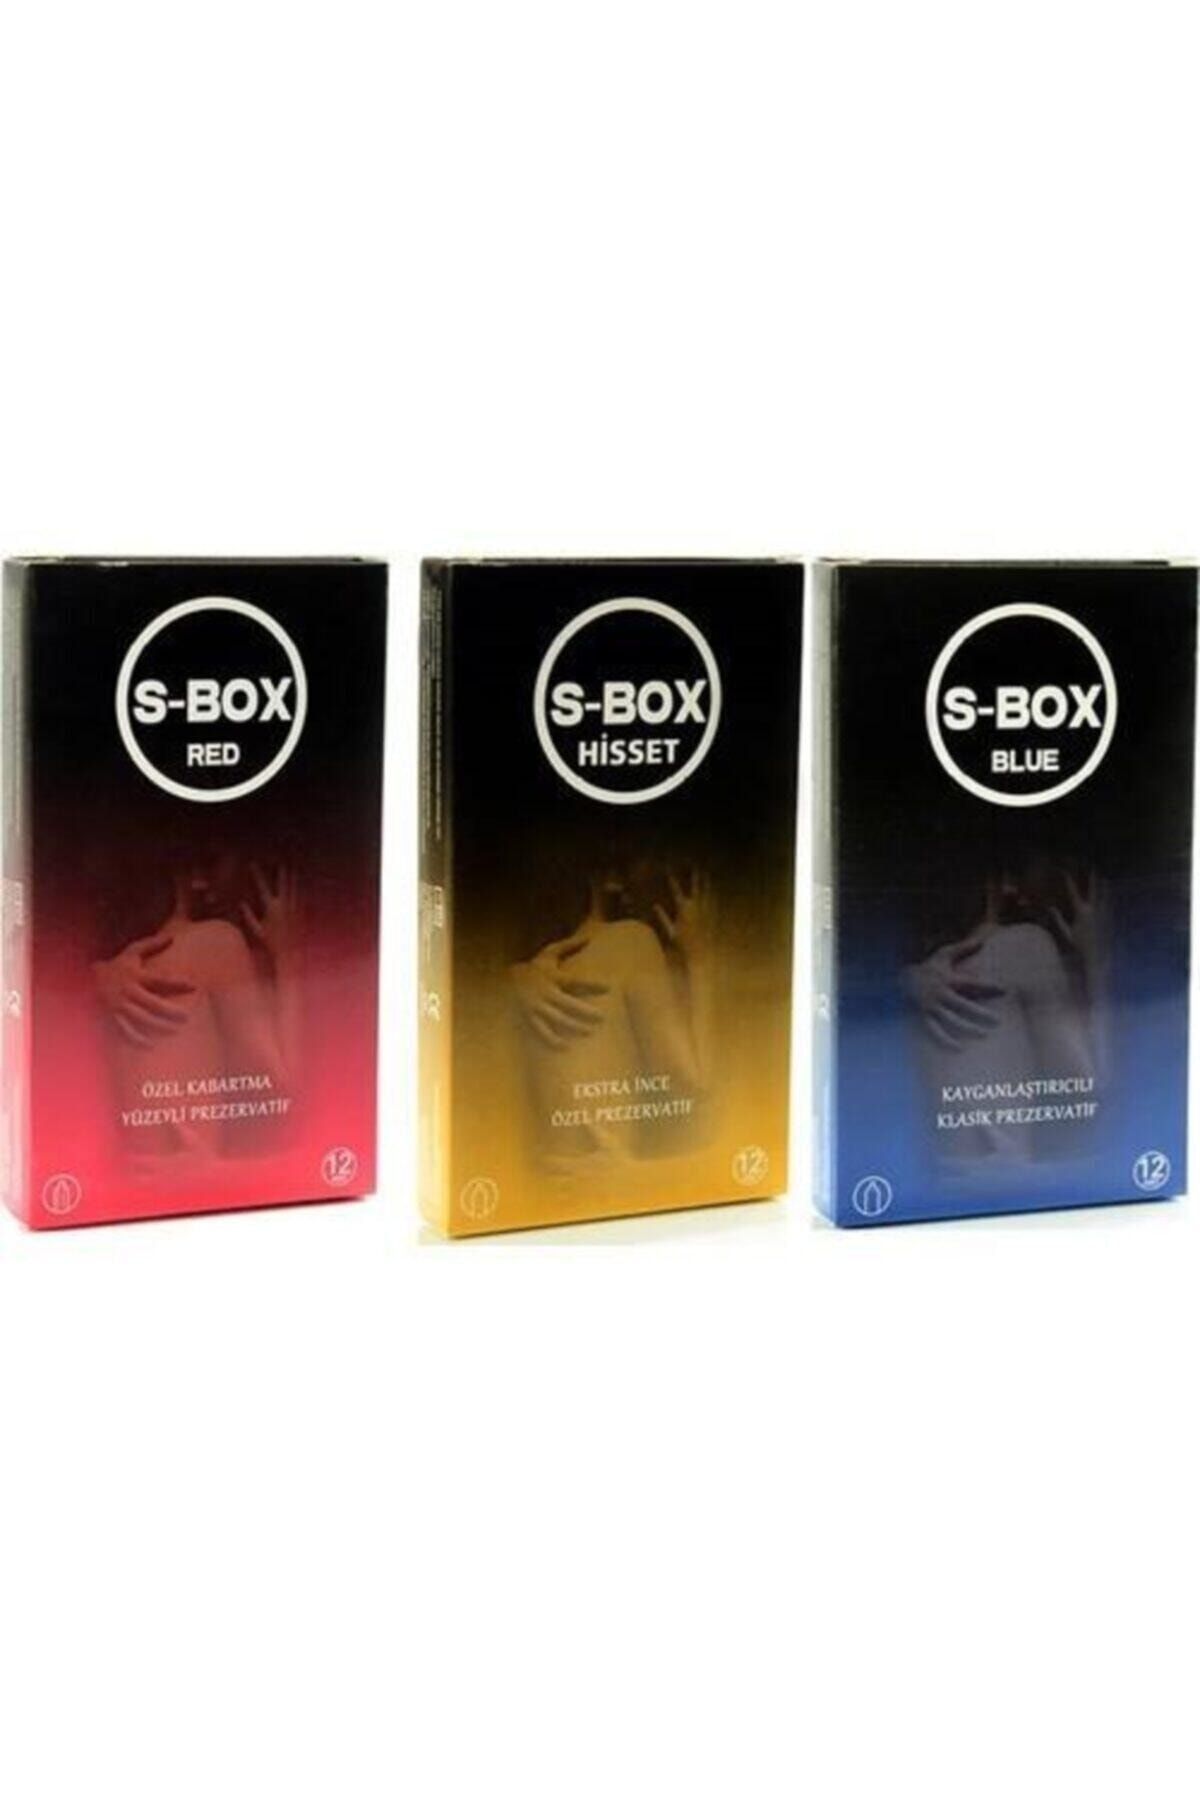 S-Box 3lü Karma Paket (36 Adet) Prezervatif